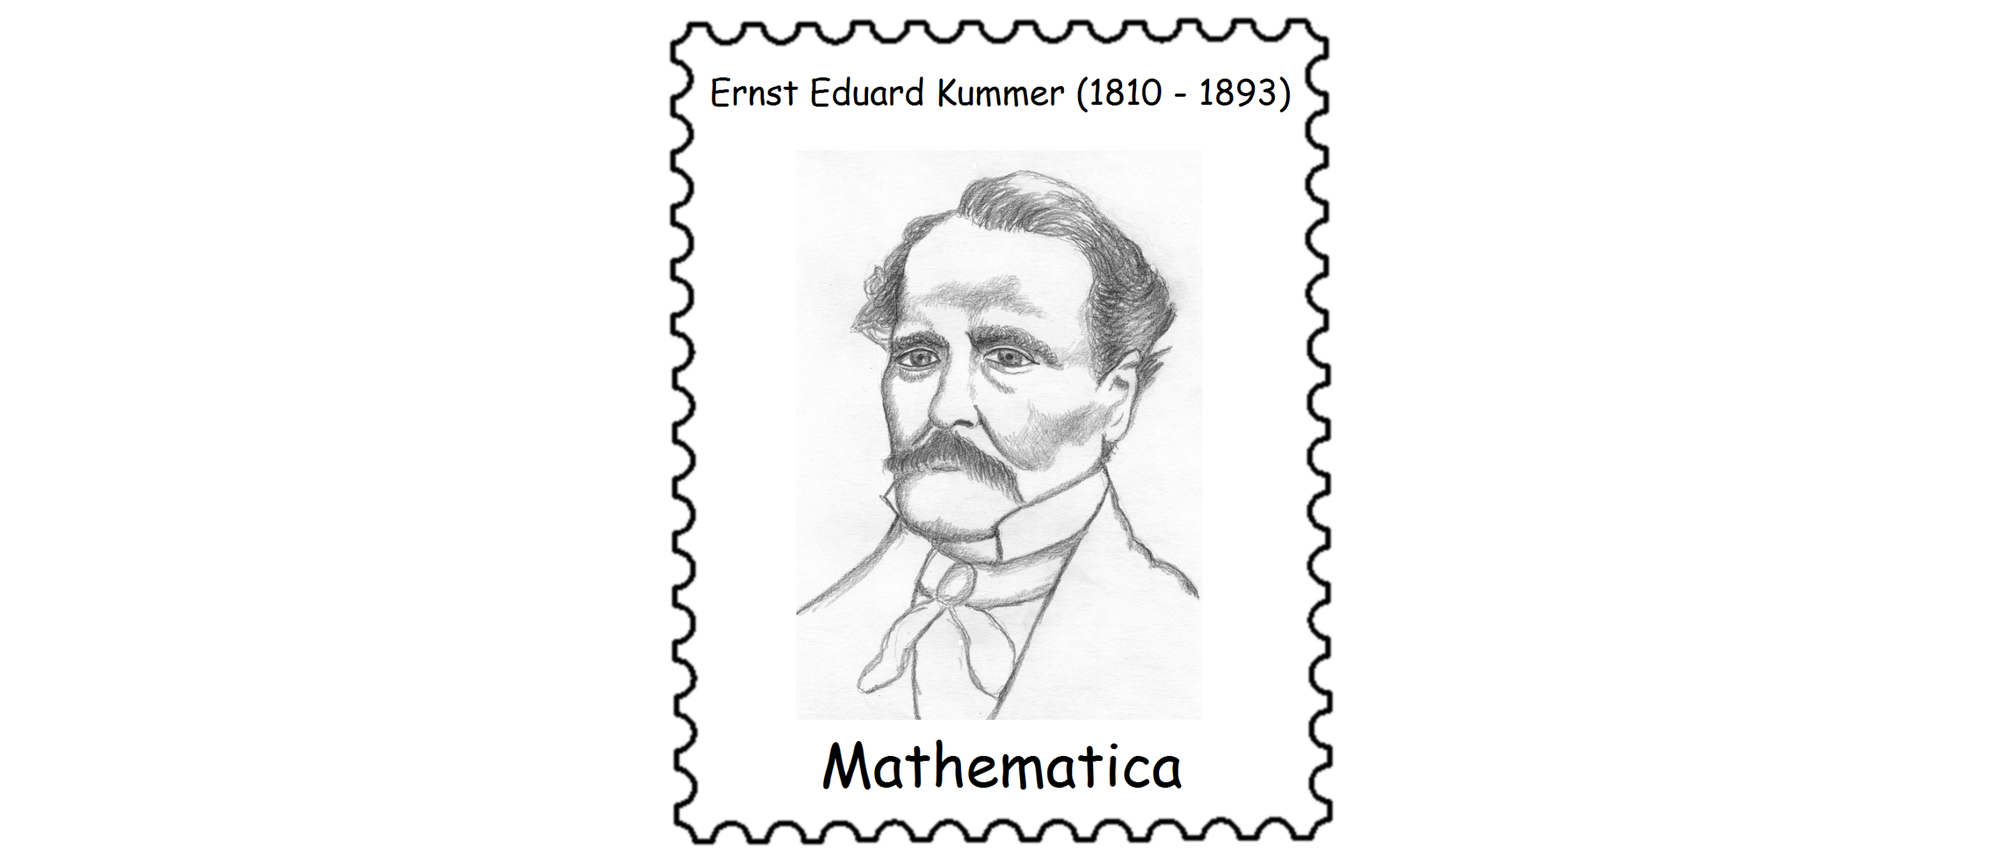 Ernst Eduard Kummer